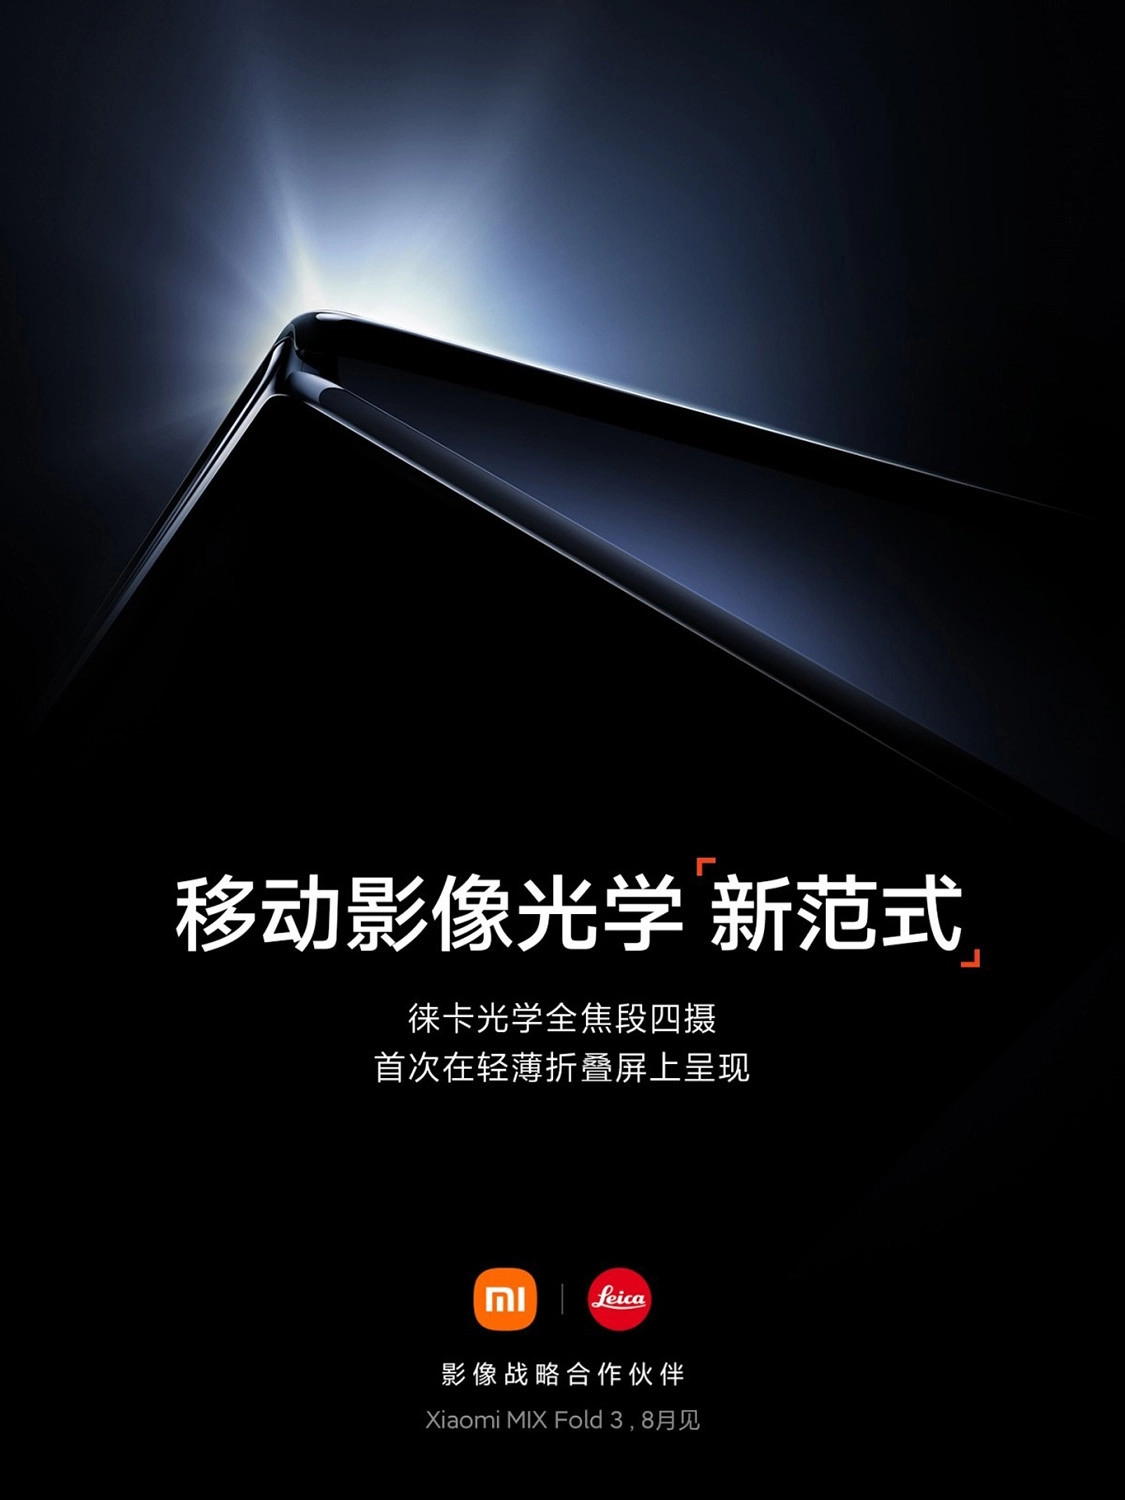 Xiaomi MIX Fold 3 sẽ mỏng hơn và nhẹ hơn so với Xiaomi MIX Fold 2